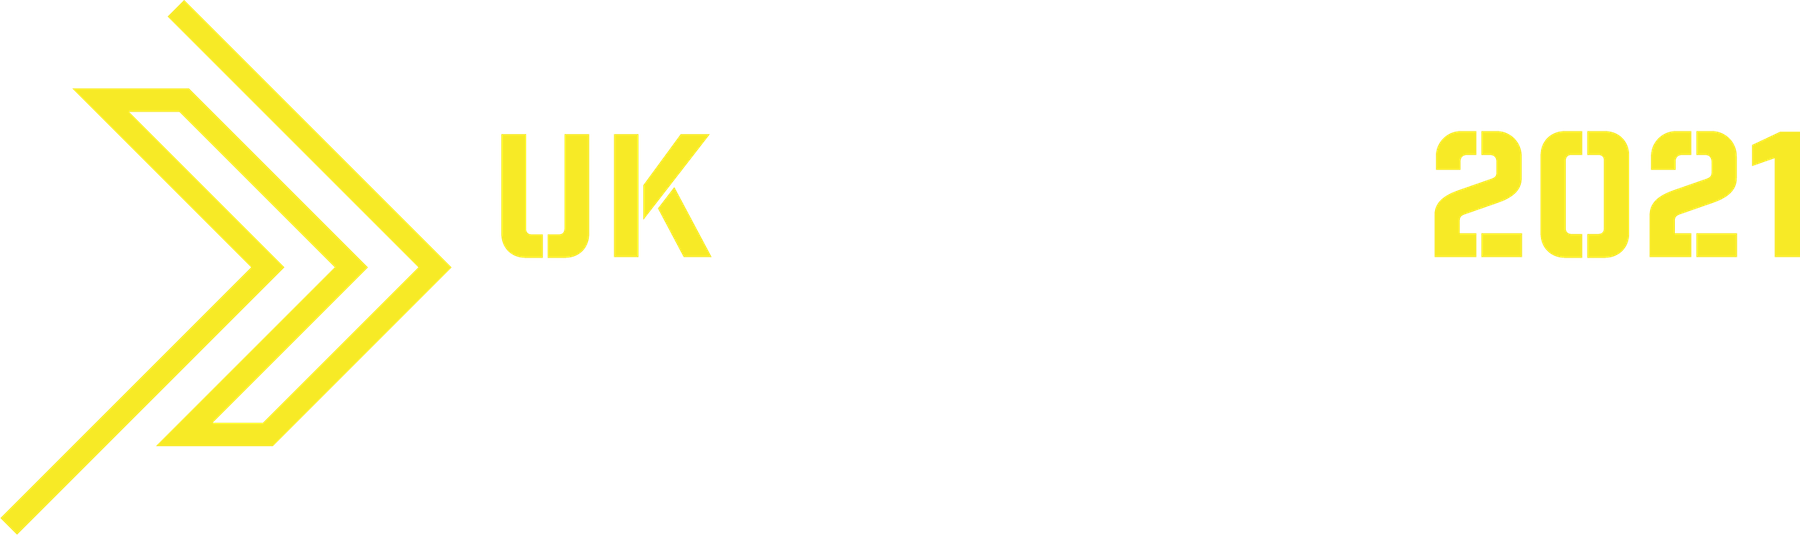 UK Search Awards logo